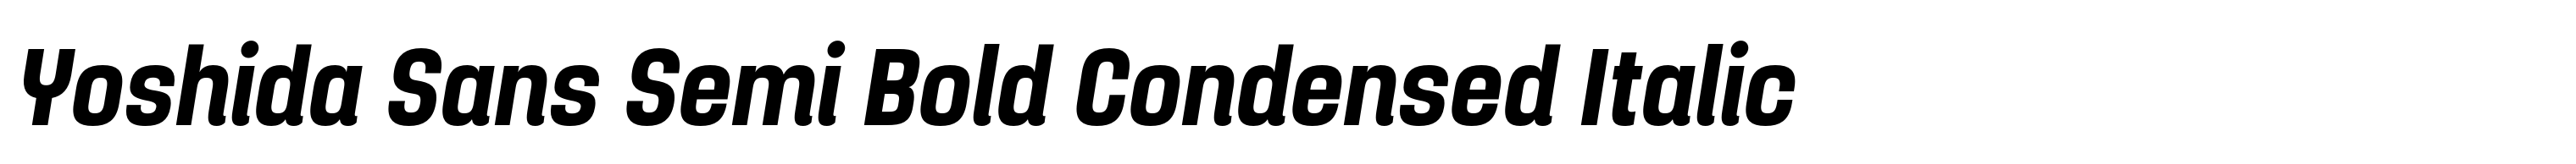 Yoshida Sans Semi Bold Condensed Italic